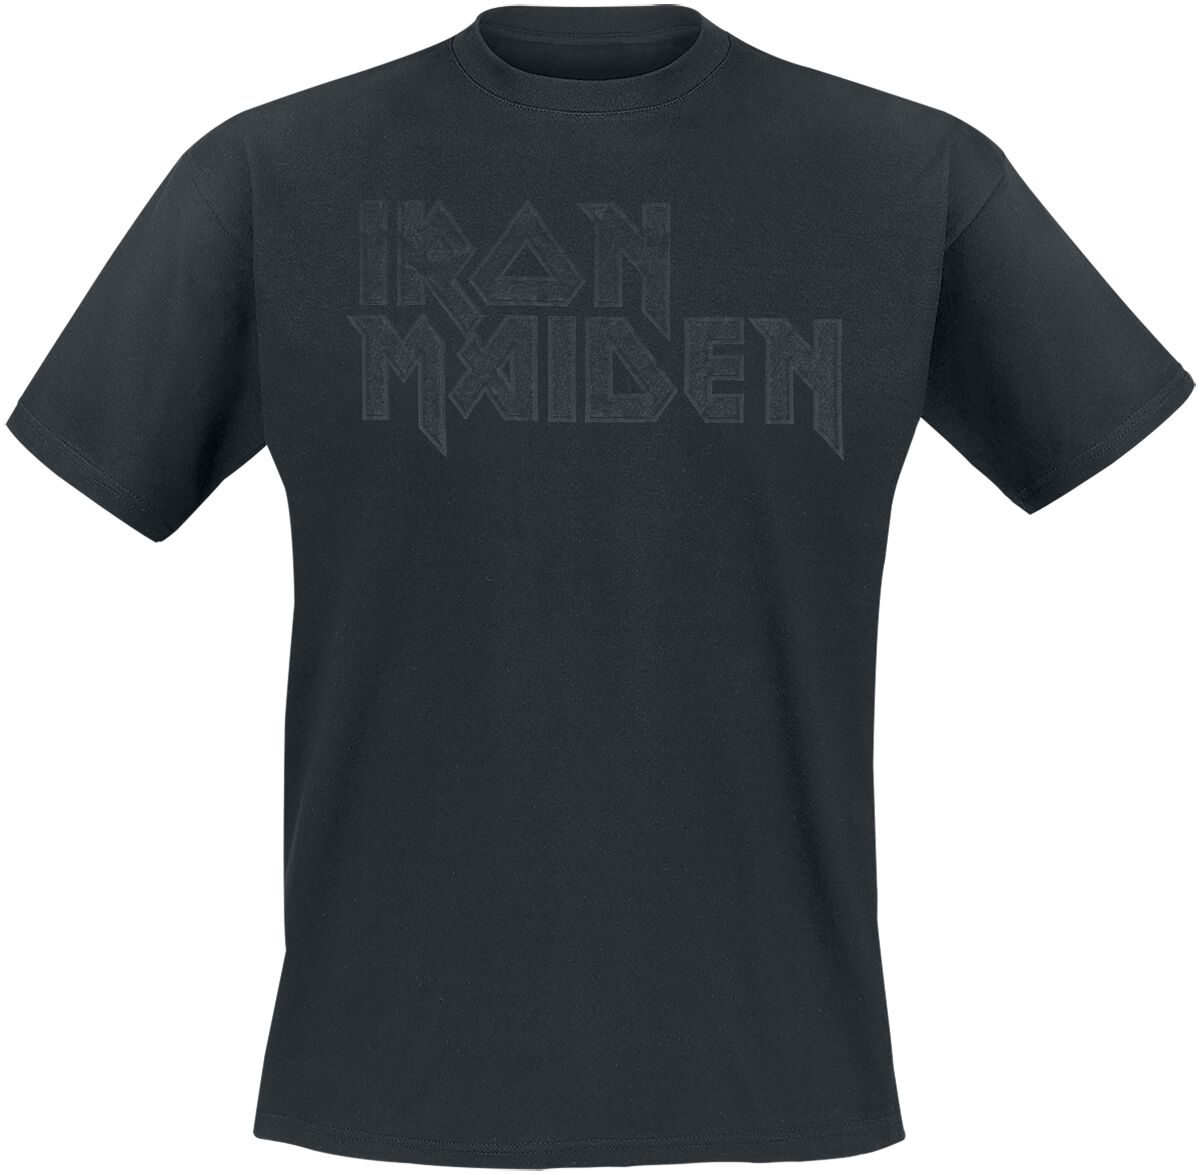 Iron Maiden T-Shirt - Black On Black Logo Stacked - S bis 4XL - für Männer - Größe 3XL - schwarz  - Lizenziertes Merchandise!